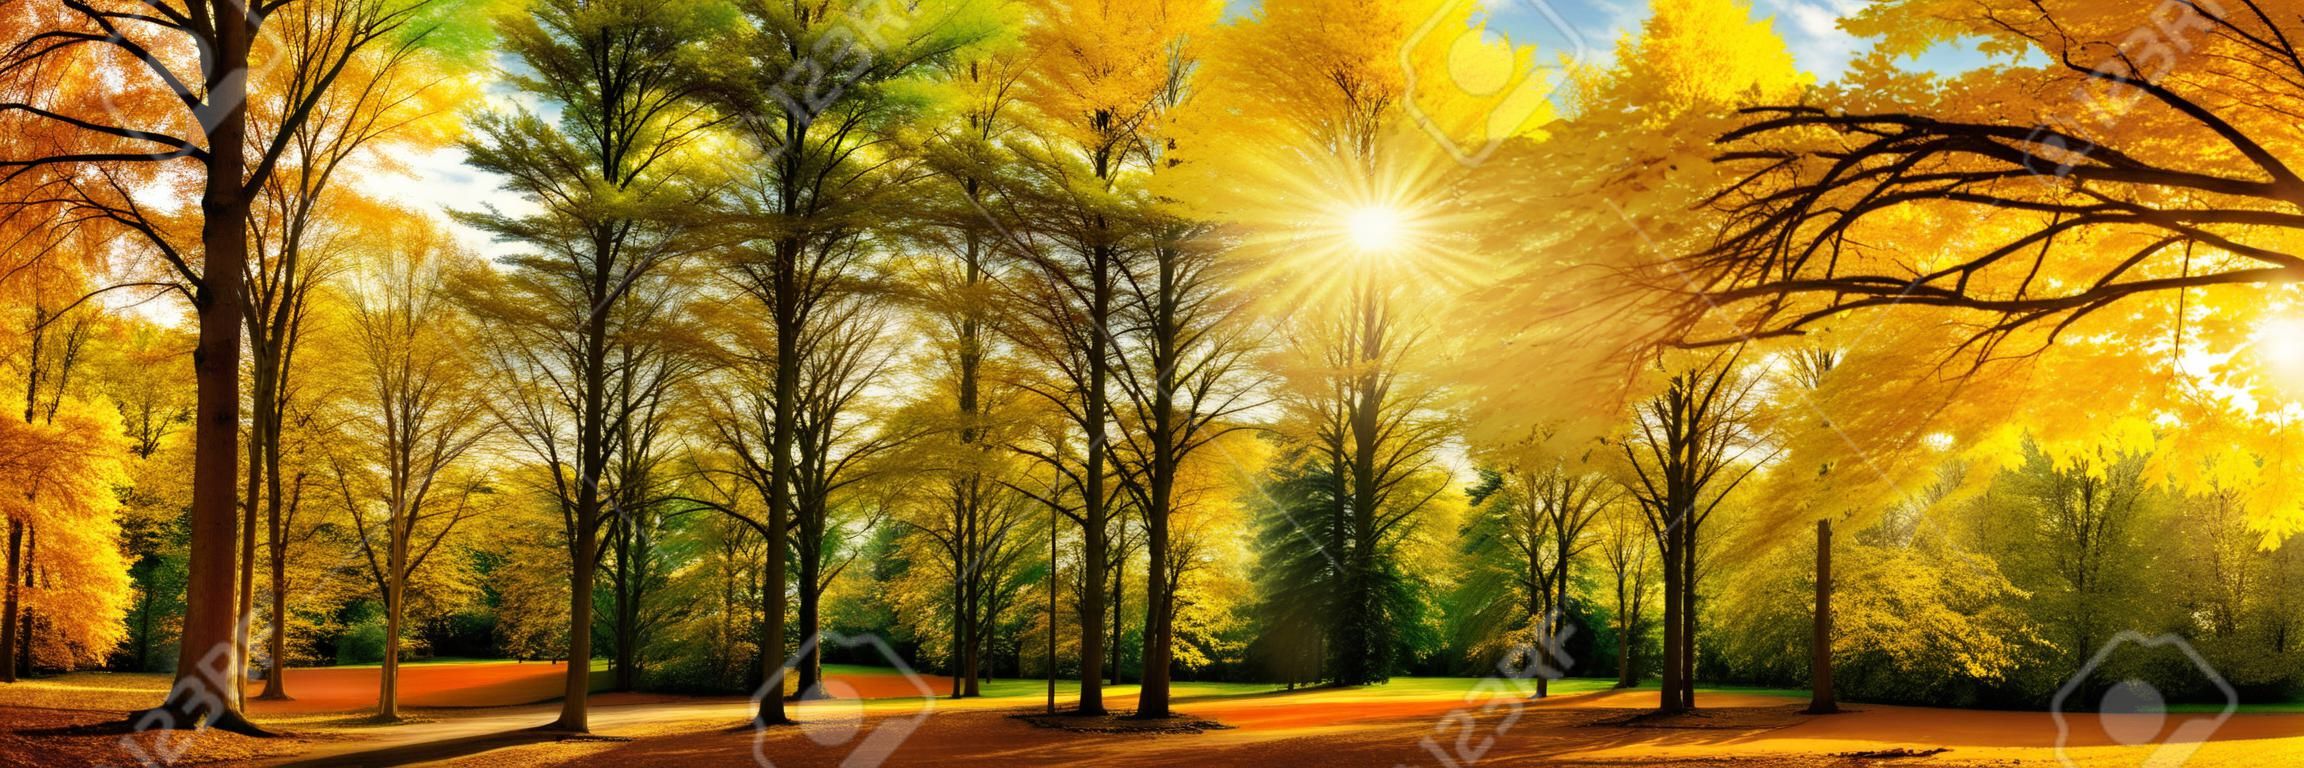 Великолепная осенний пейзаж, панорама живописной лес с большим количеством теплых солнечных лучах